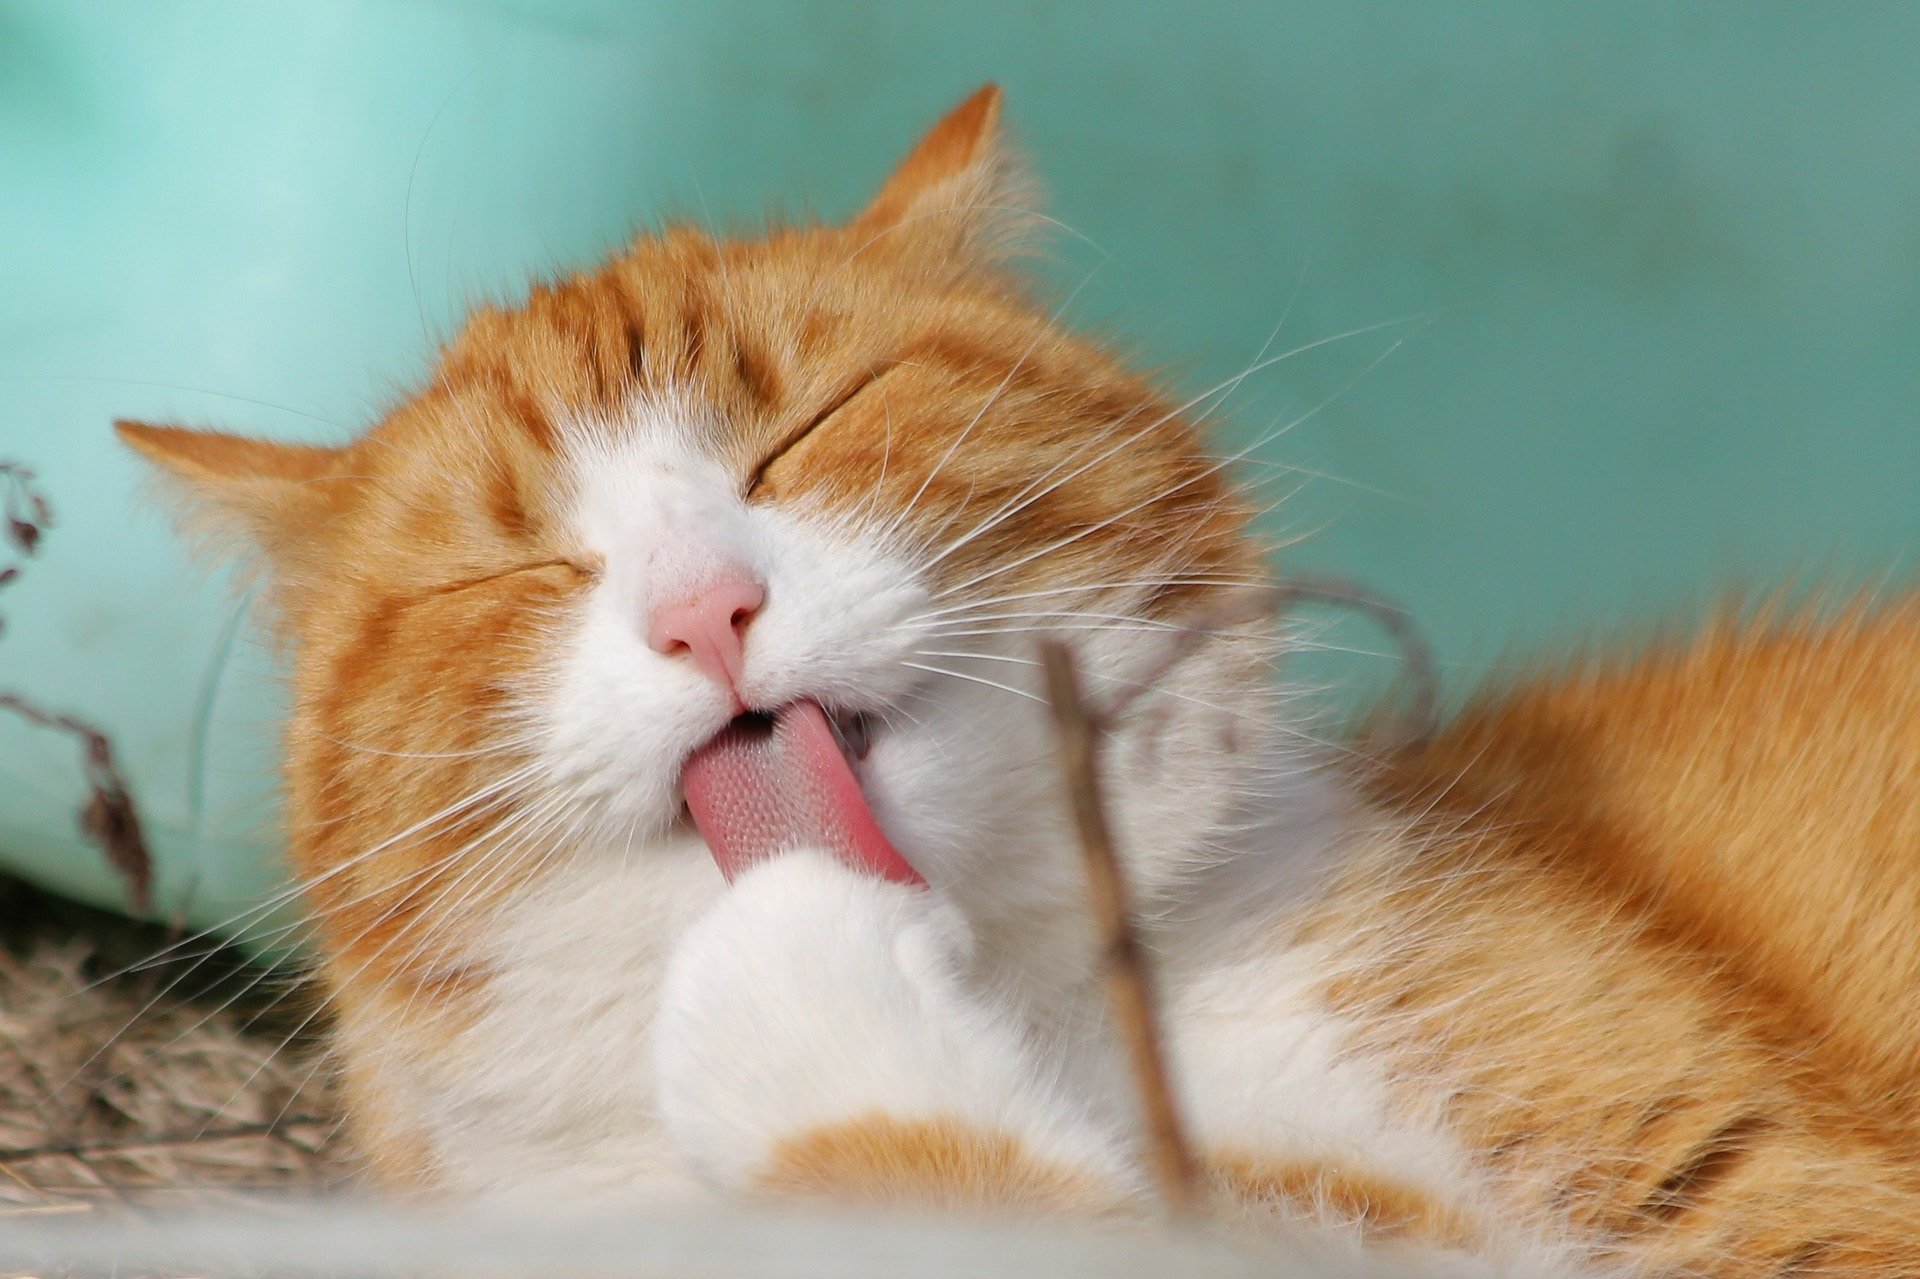 Ce que ressent votre chat : les positions de sommeil peuvent vous renseigner sur l'état émotionnel de votre animal